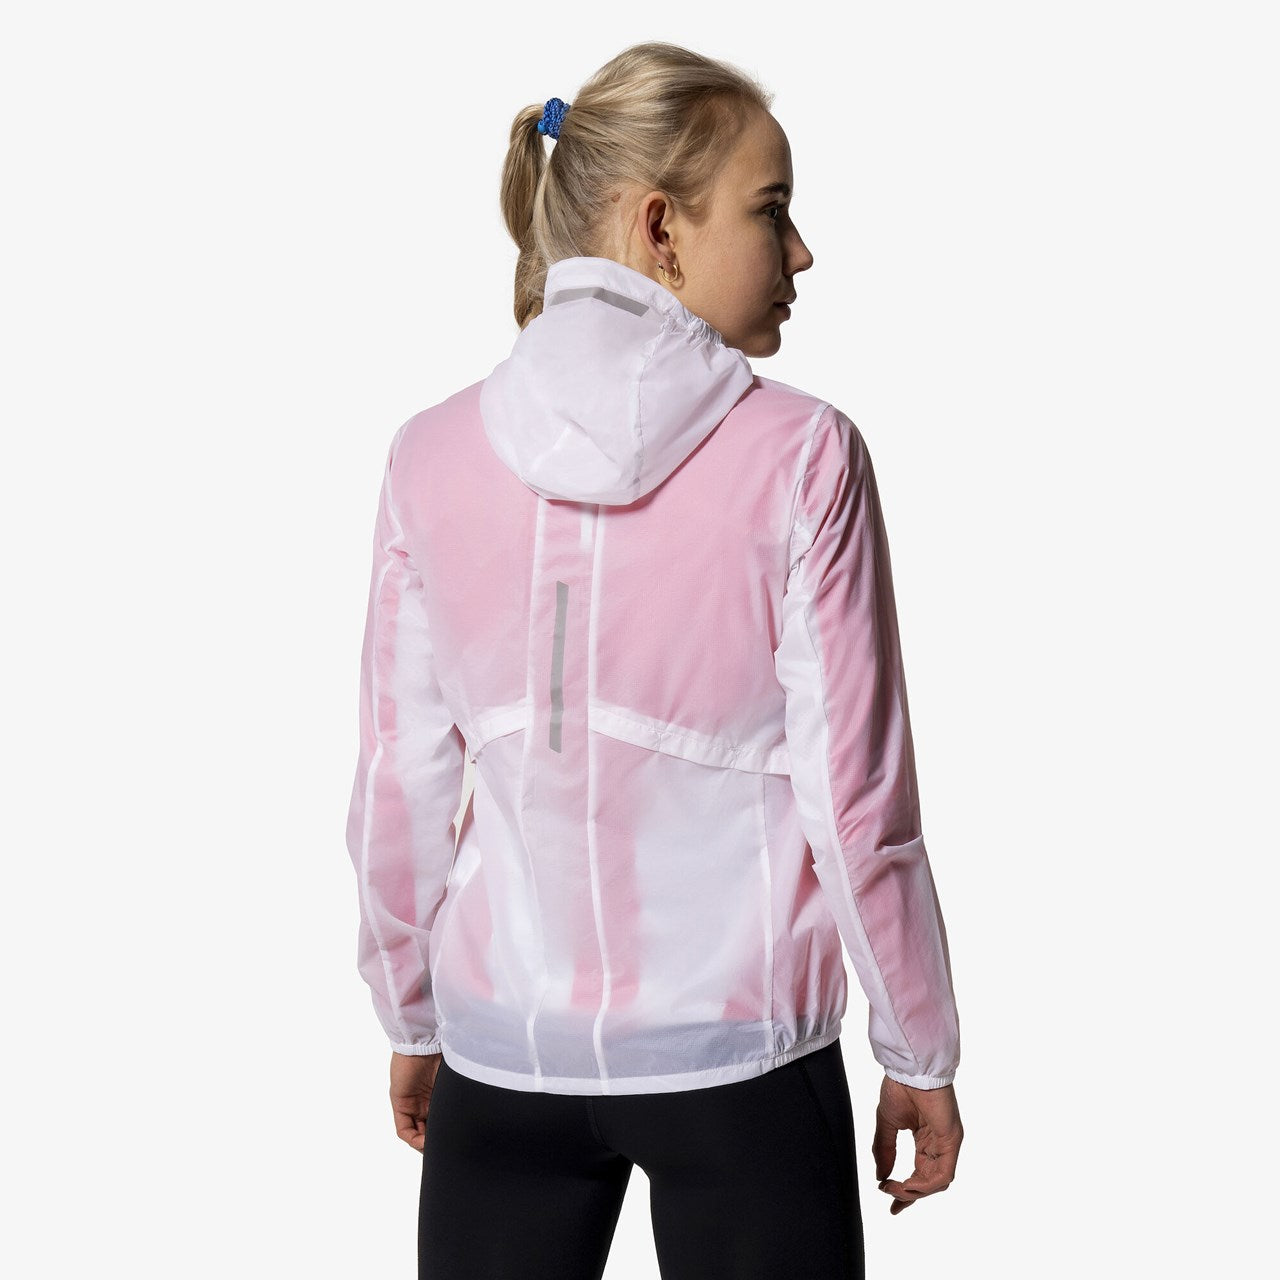 Pace - Women's Wind Light Hooded Jacket